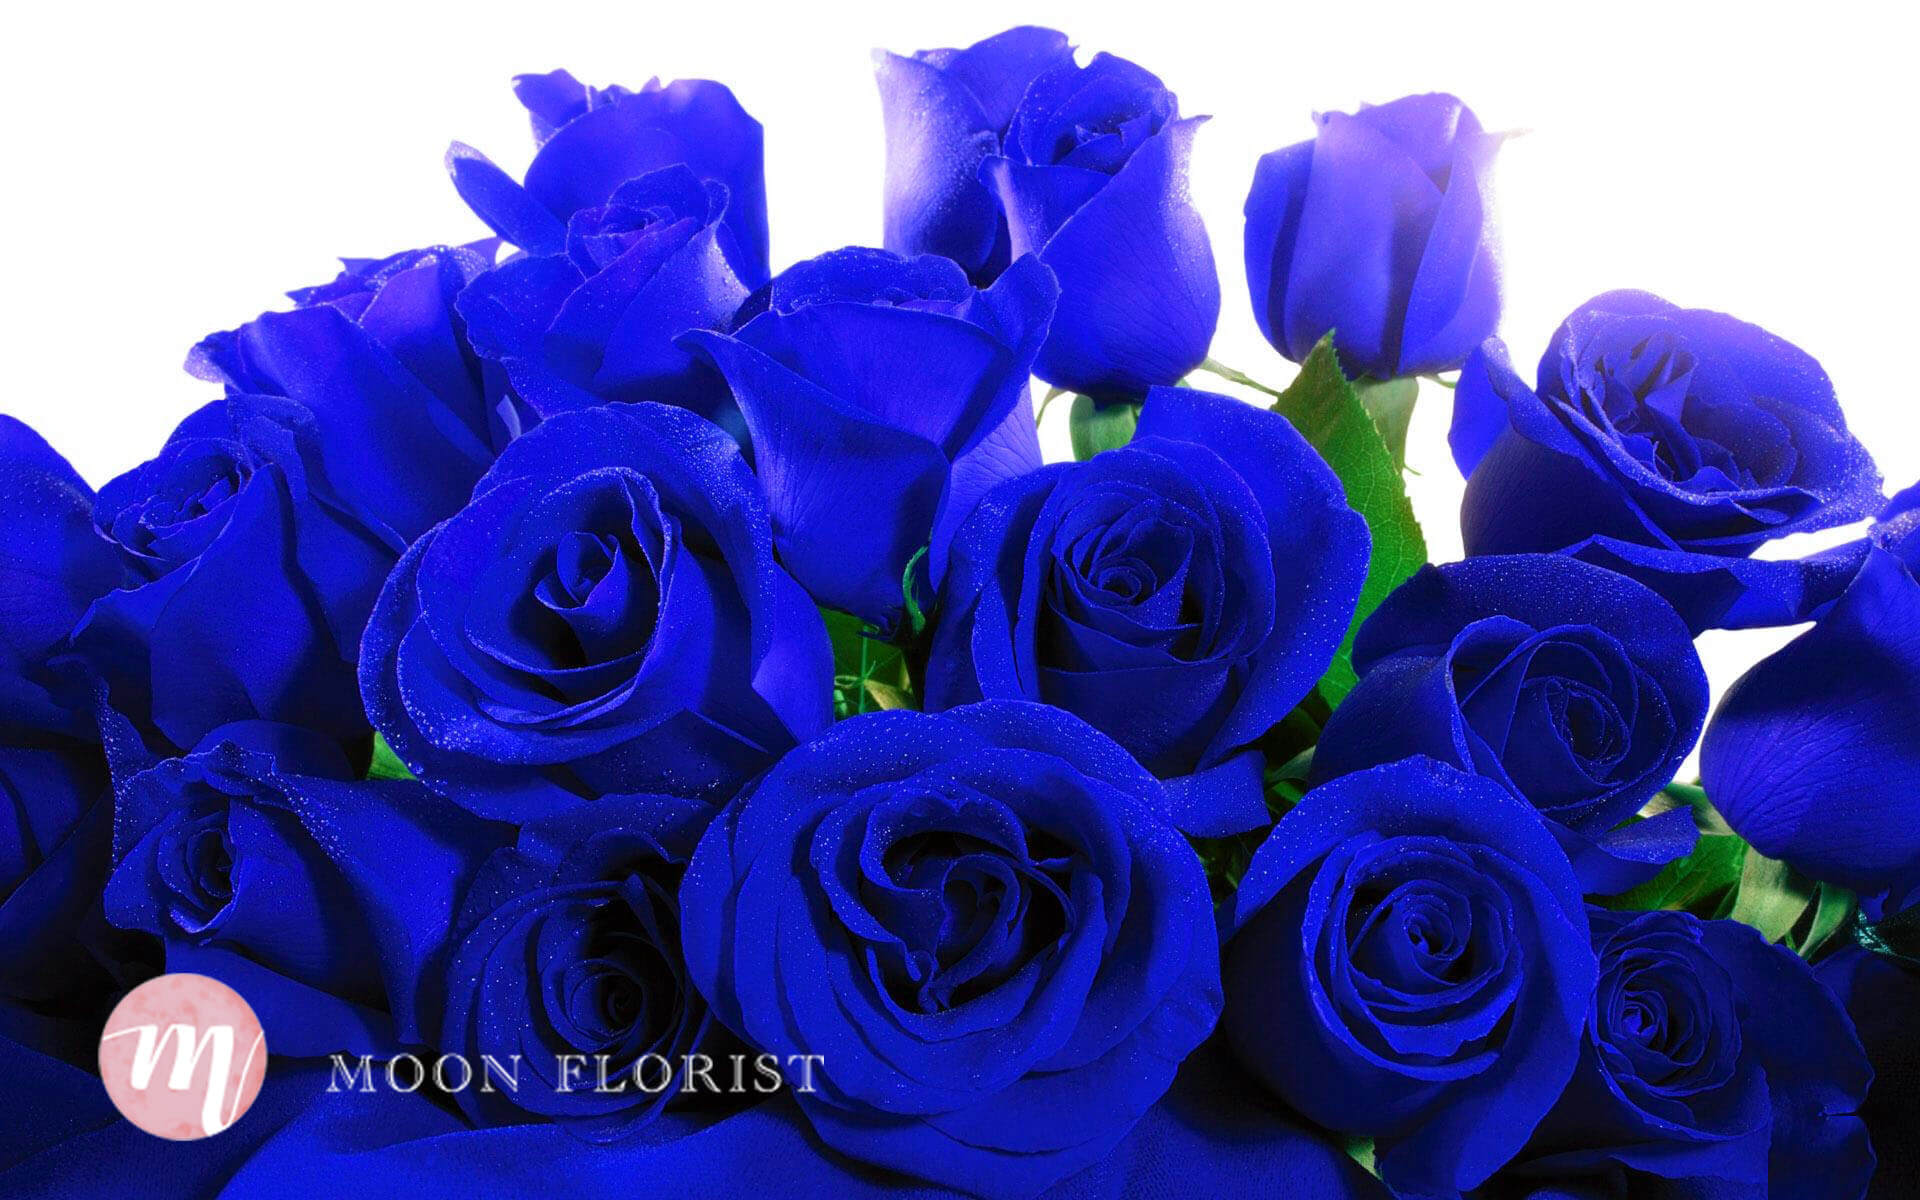 99支玫瑰求婚, 99枝紅玫瑰, Moon Florist -blue rose